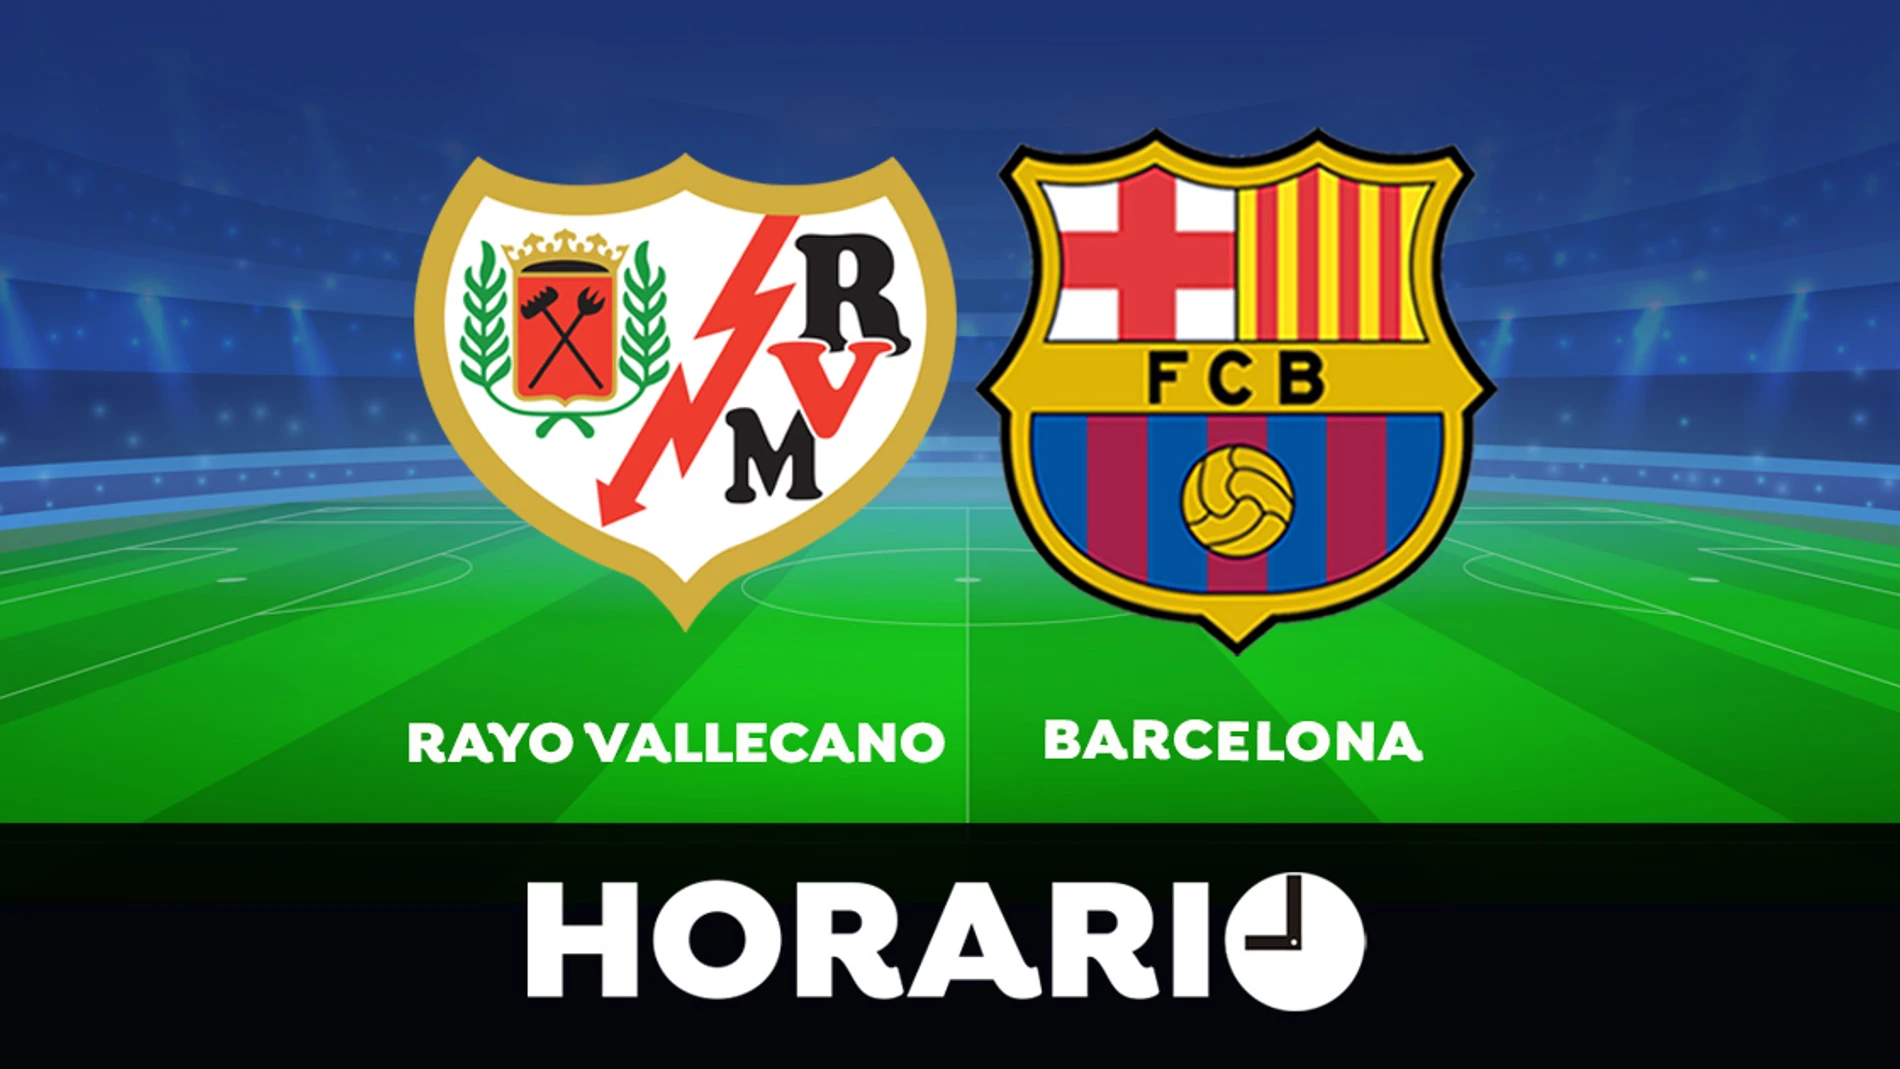 Rayo Vallecano - Barcelona: Horario y dónde ver el partido de la Liga Santander en directo